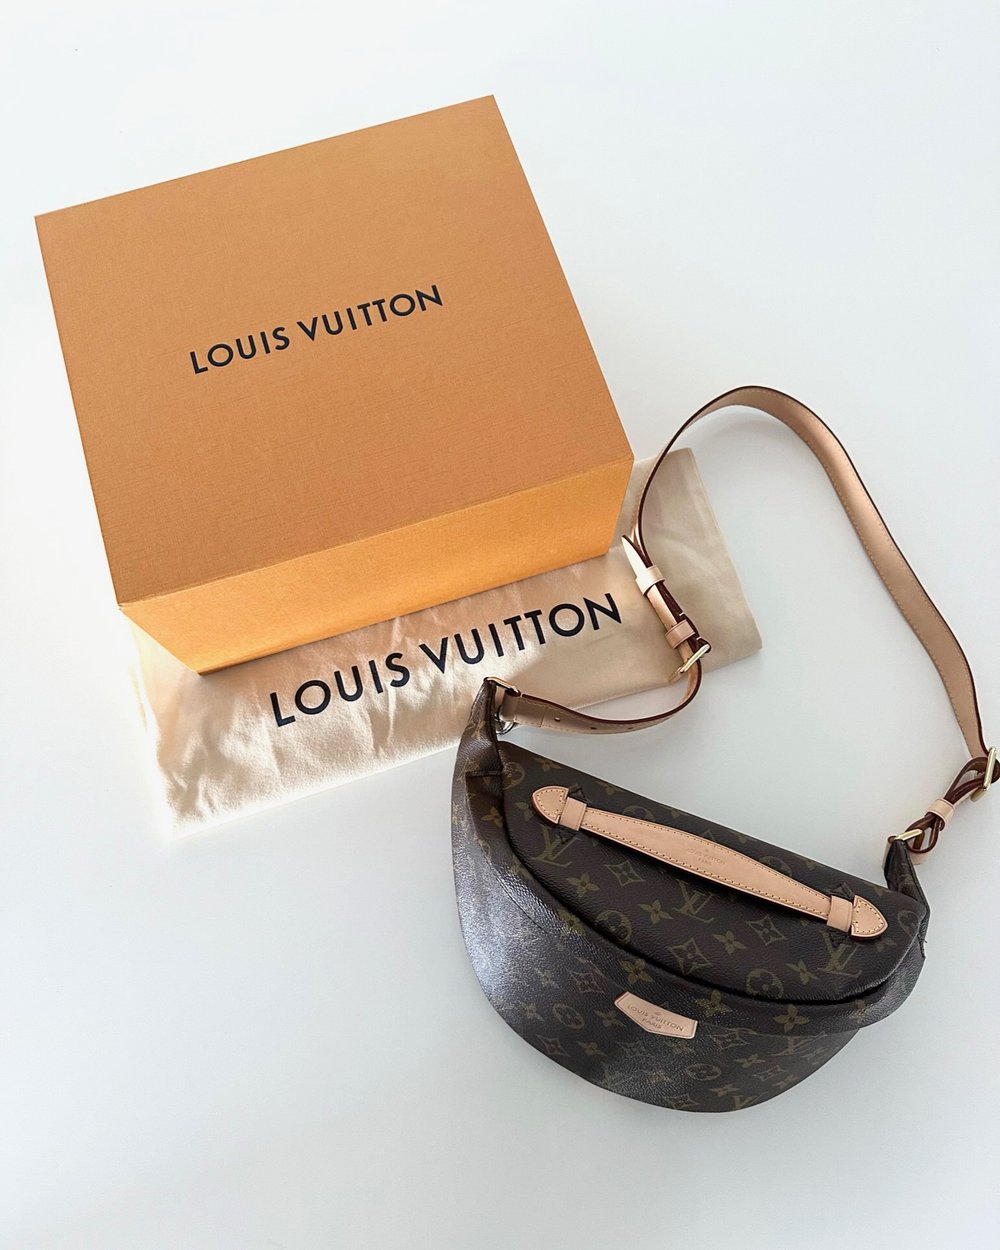 Louis Vuitton Visor – Chelsea Nikole